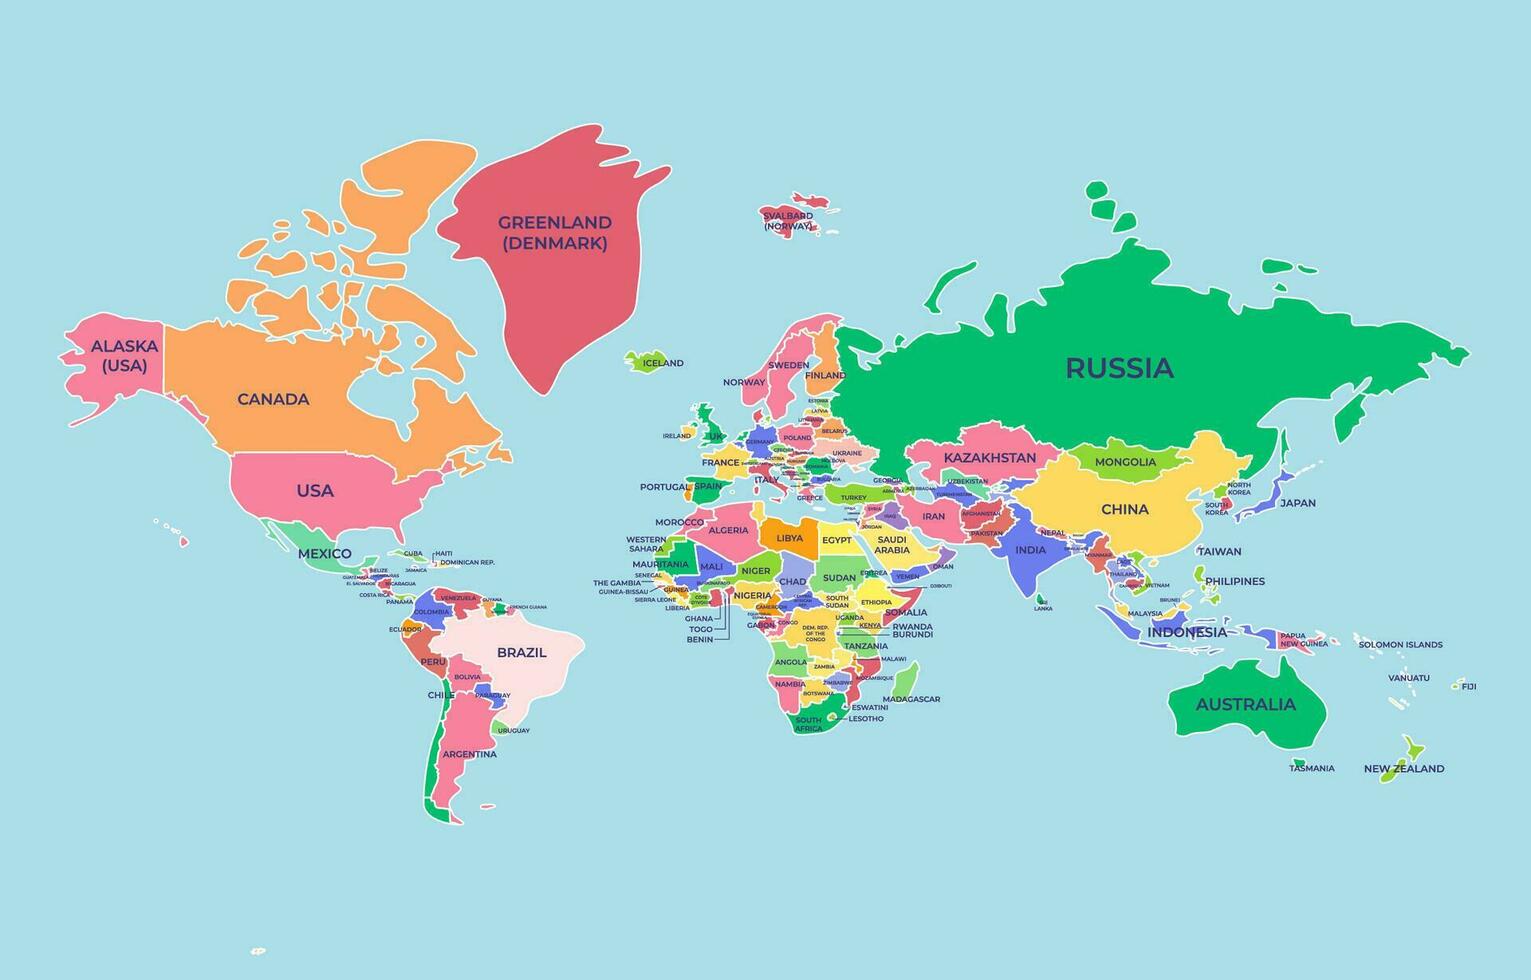 world-map-template-27263617-vector-art-at-vecteezy